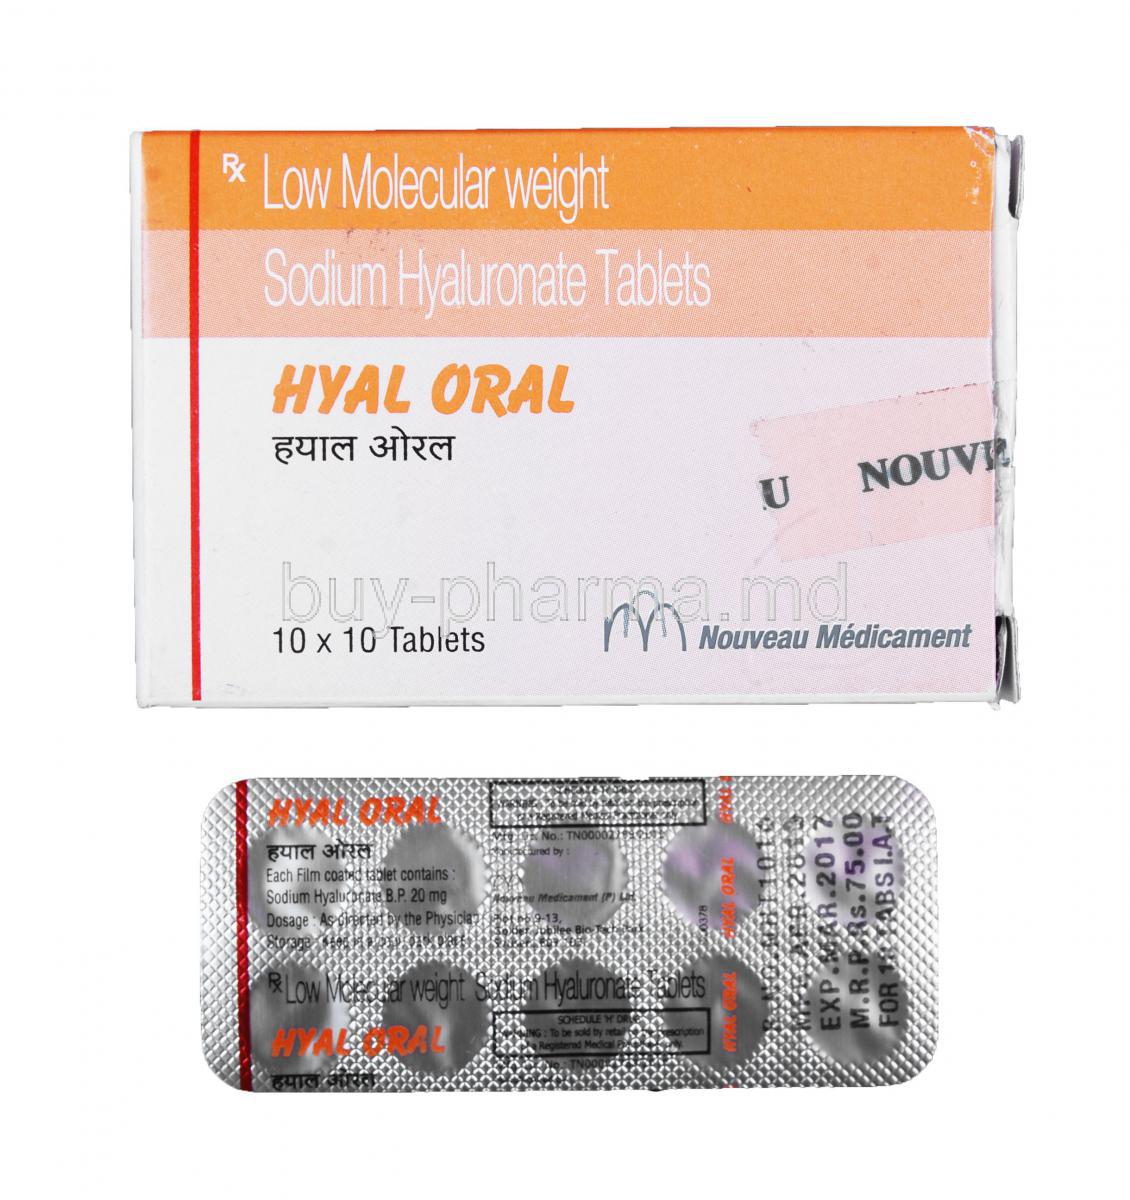 Hyal Oral, Sodium Hyaluronate 20mg Tablet